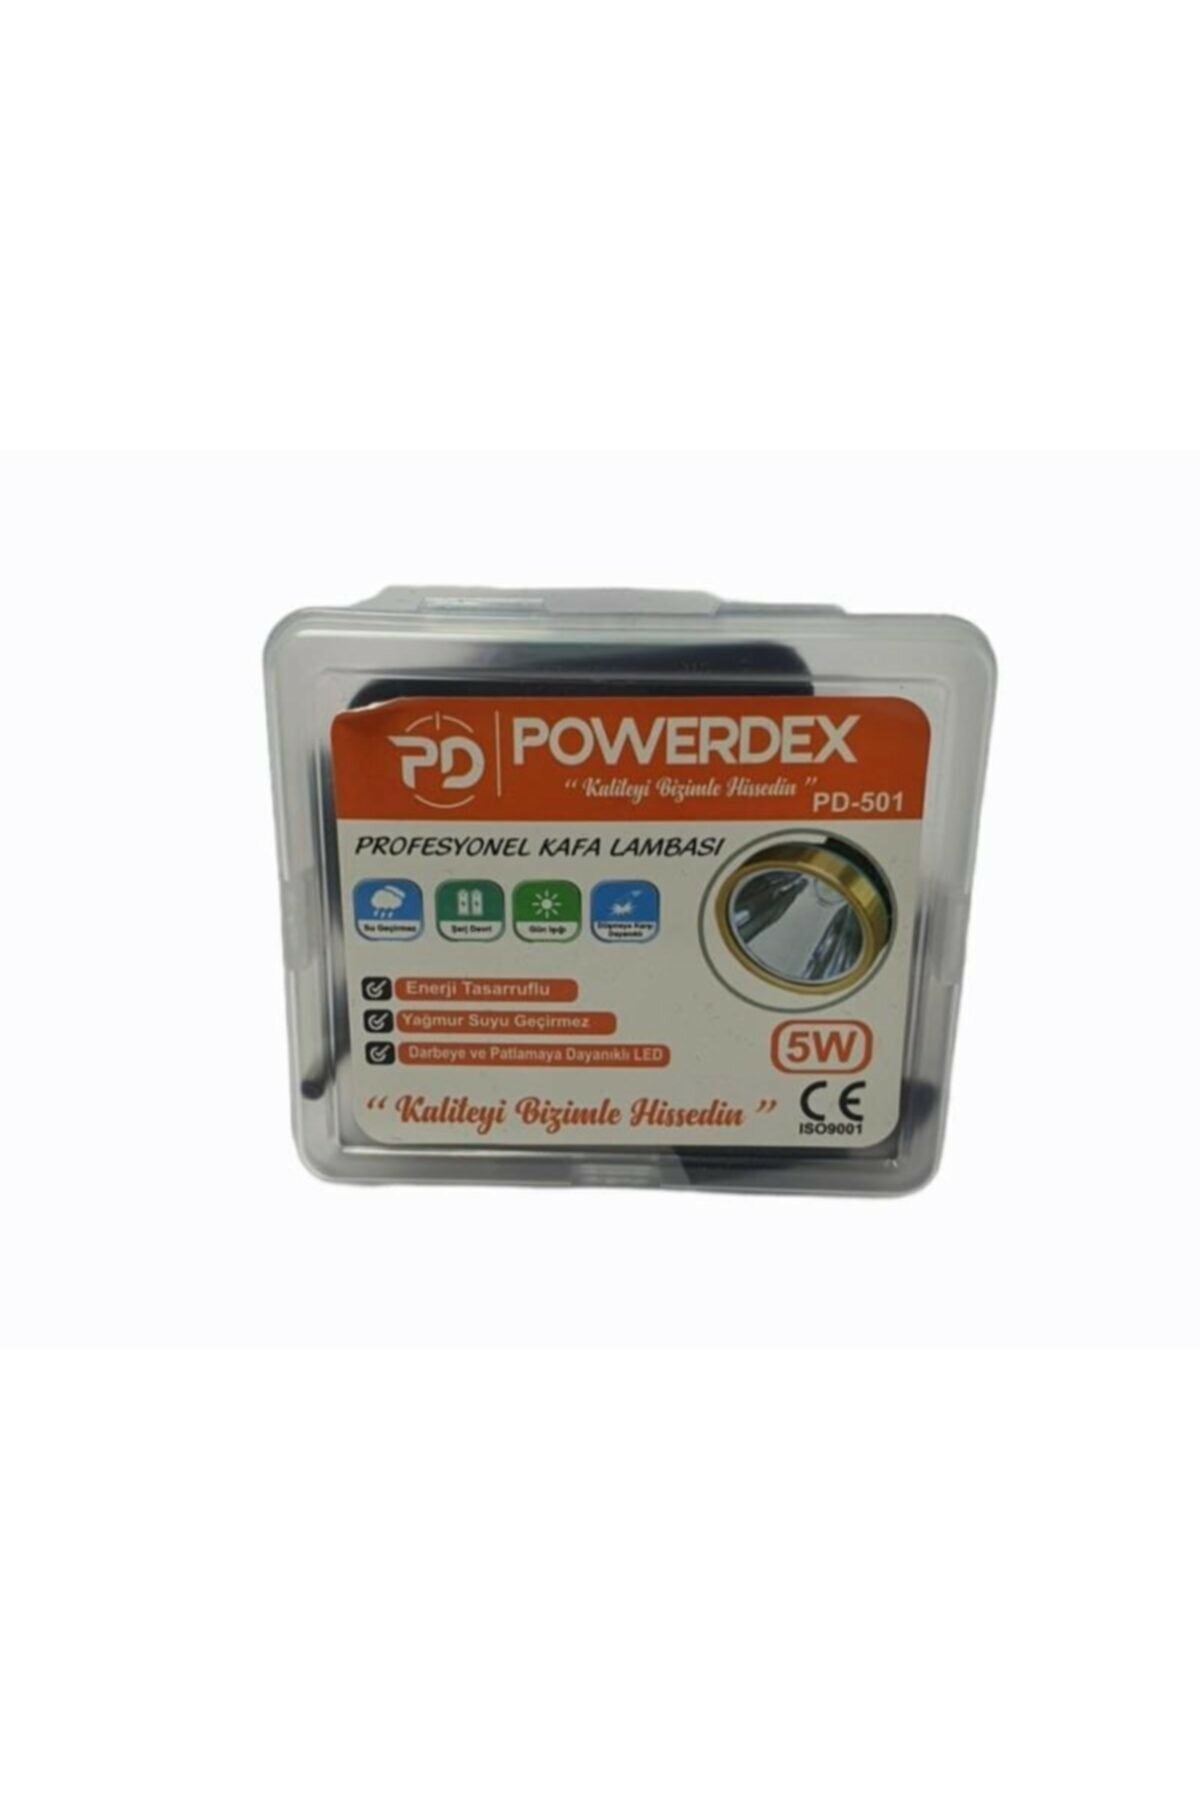 Pratik Powerdex Pd-501 Kafa Lambası Şarjlı PD-501